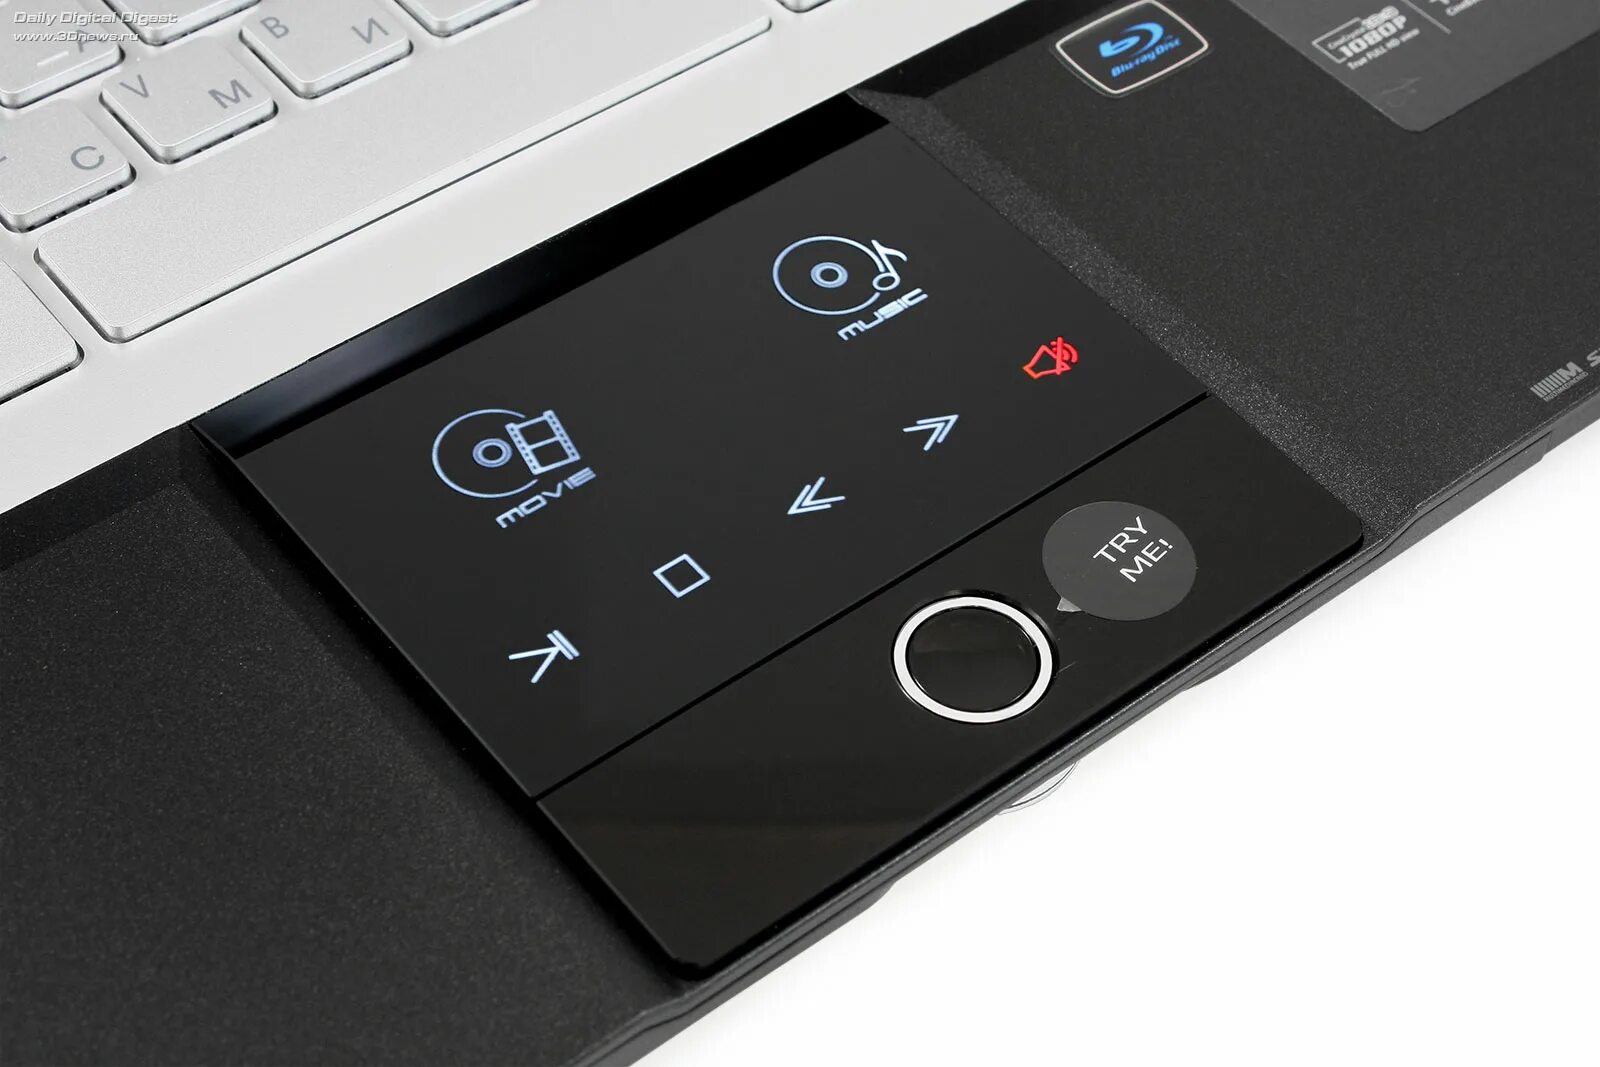 Acer Aspire со съемным тачпадом. Acer 8951g. Ноутбук Acer с сенсорным тачпадом. Клавиатура для Acer 8951g.